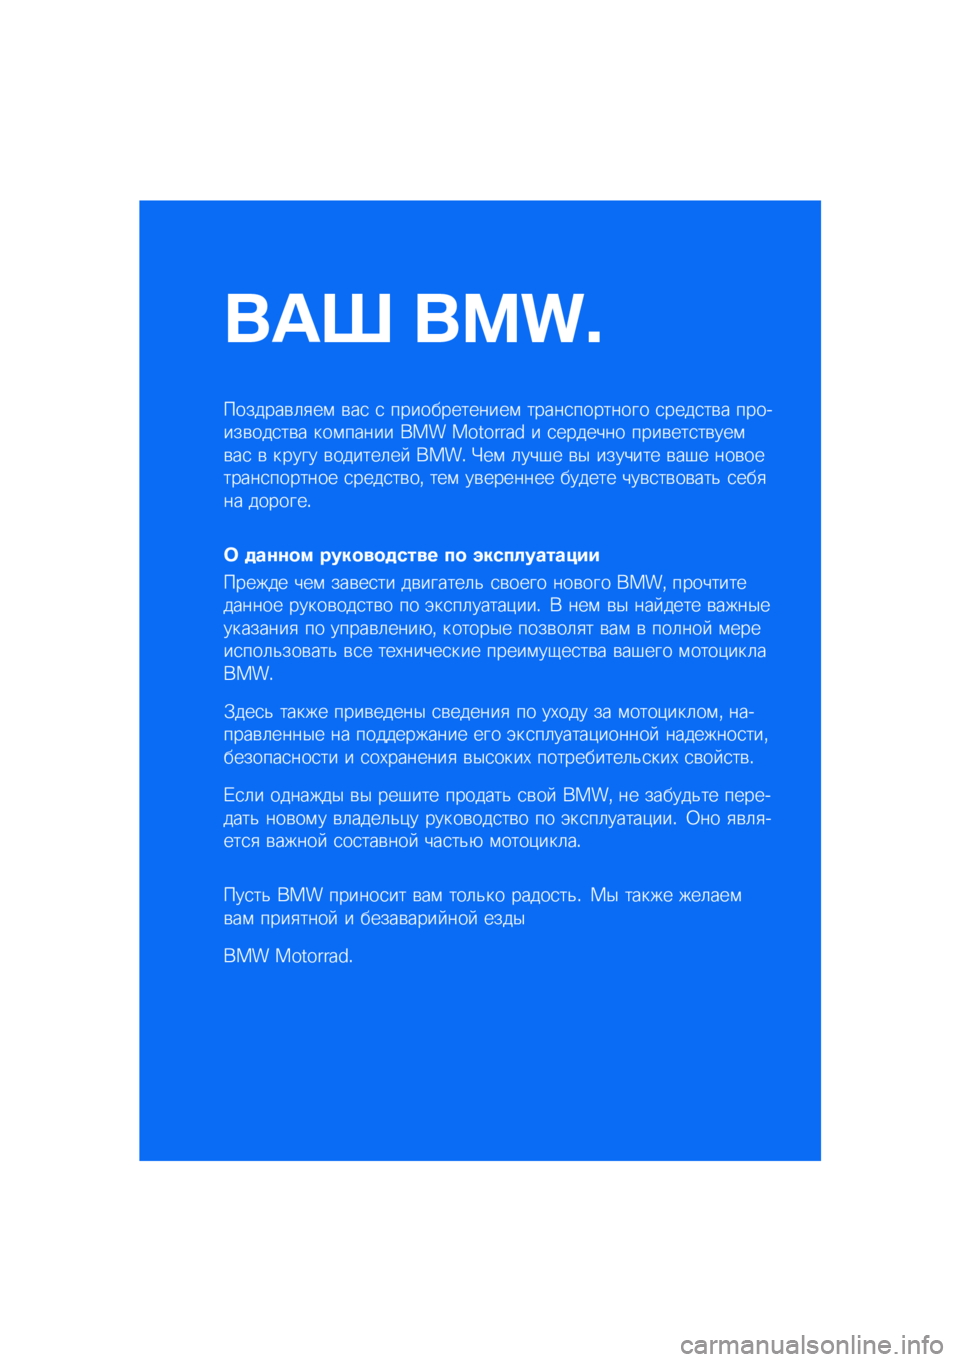 BMW MOTORRAD C 400 GT 2021  Руководство по эксплуатации (in Russian) ��� ����\b
�������\b�	�
��\f �\b��
 �
 �������������\f �����
�������� �
����
��\b� �������\b���
��\b� ���\f����� ��� �������� � 